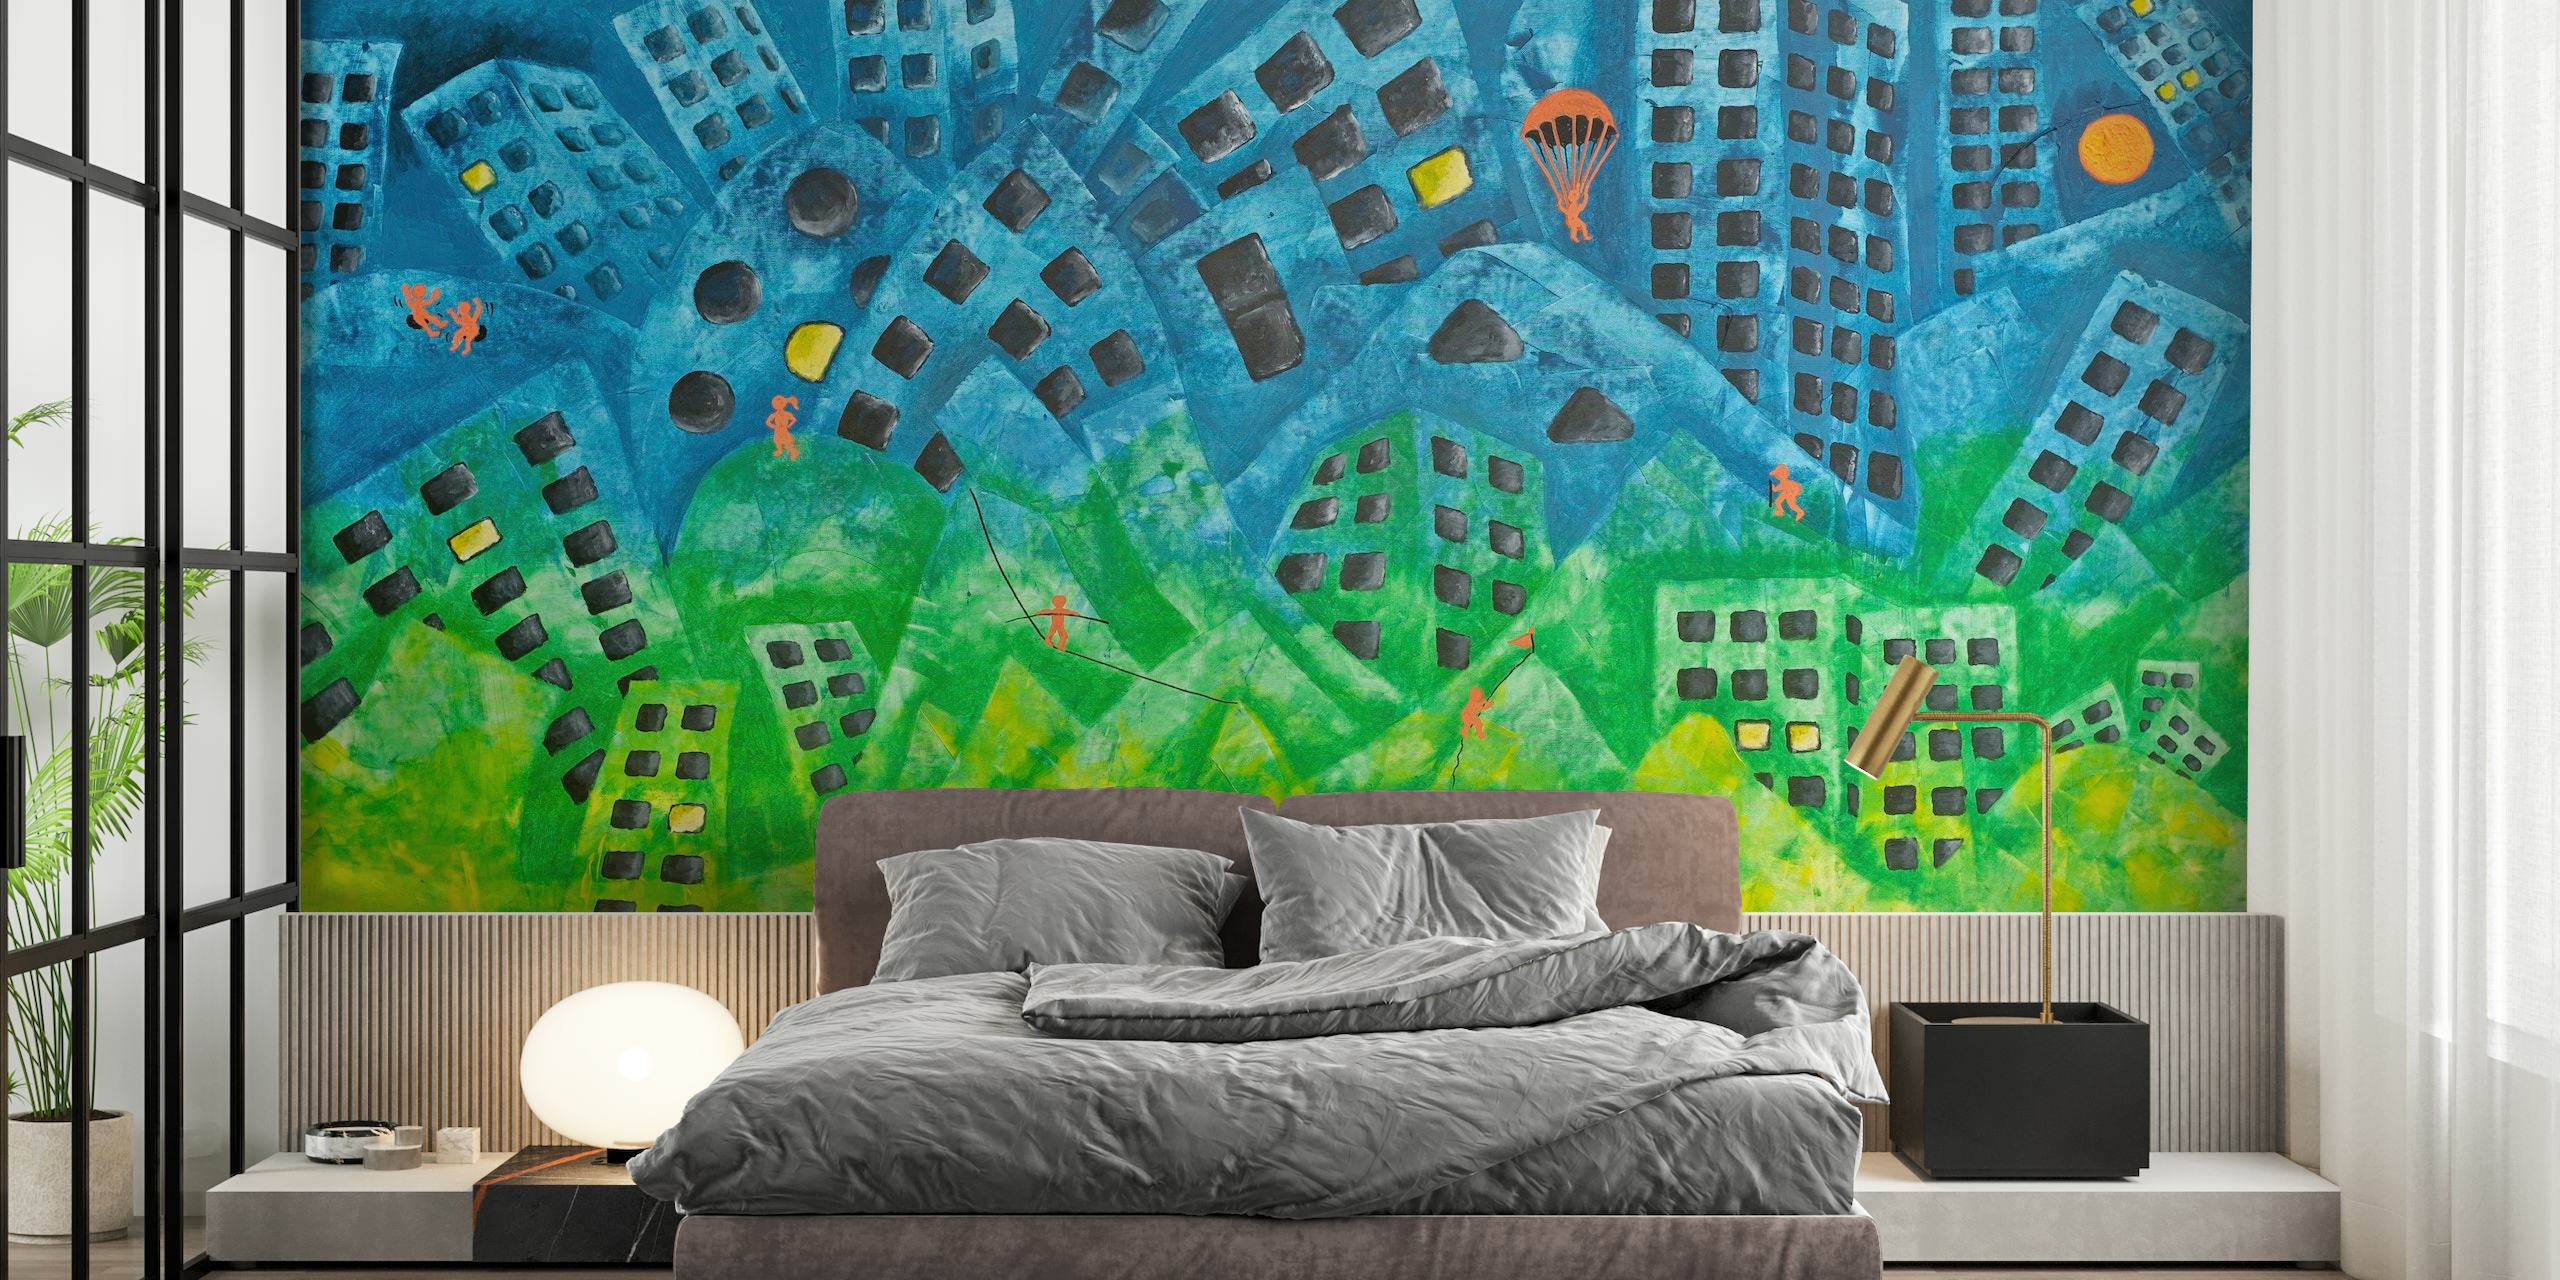 Abstrakt urban bybillede vægmaleri med finurlige skyskrabere og livlige farver